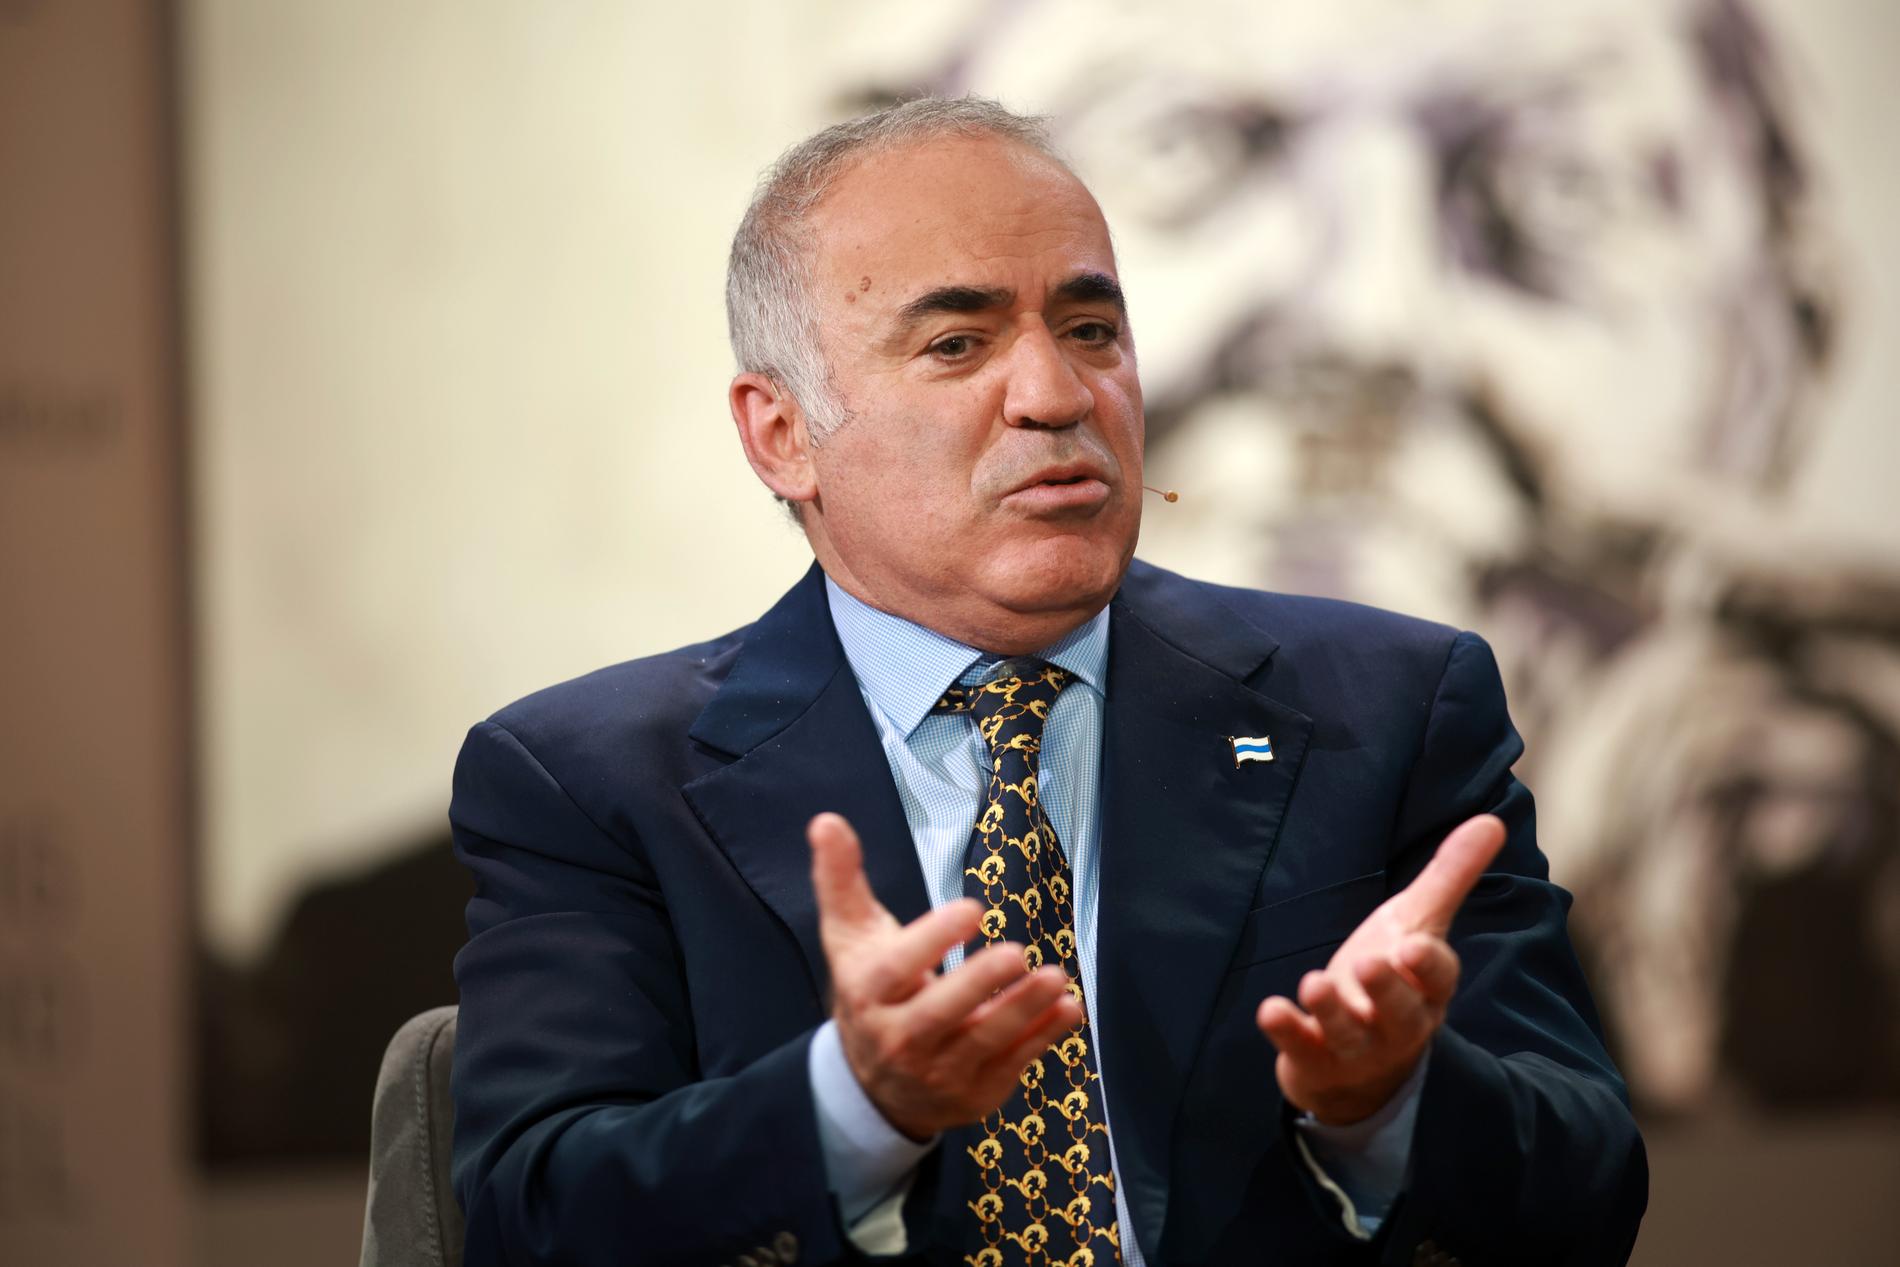 Garry Kasparov.